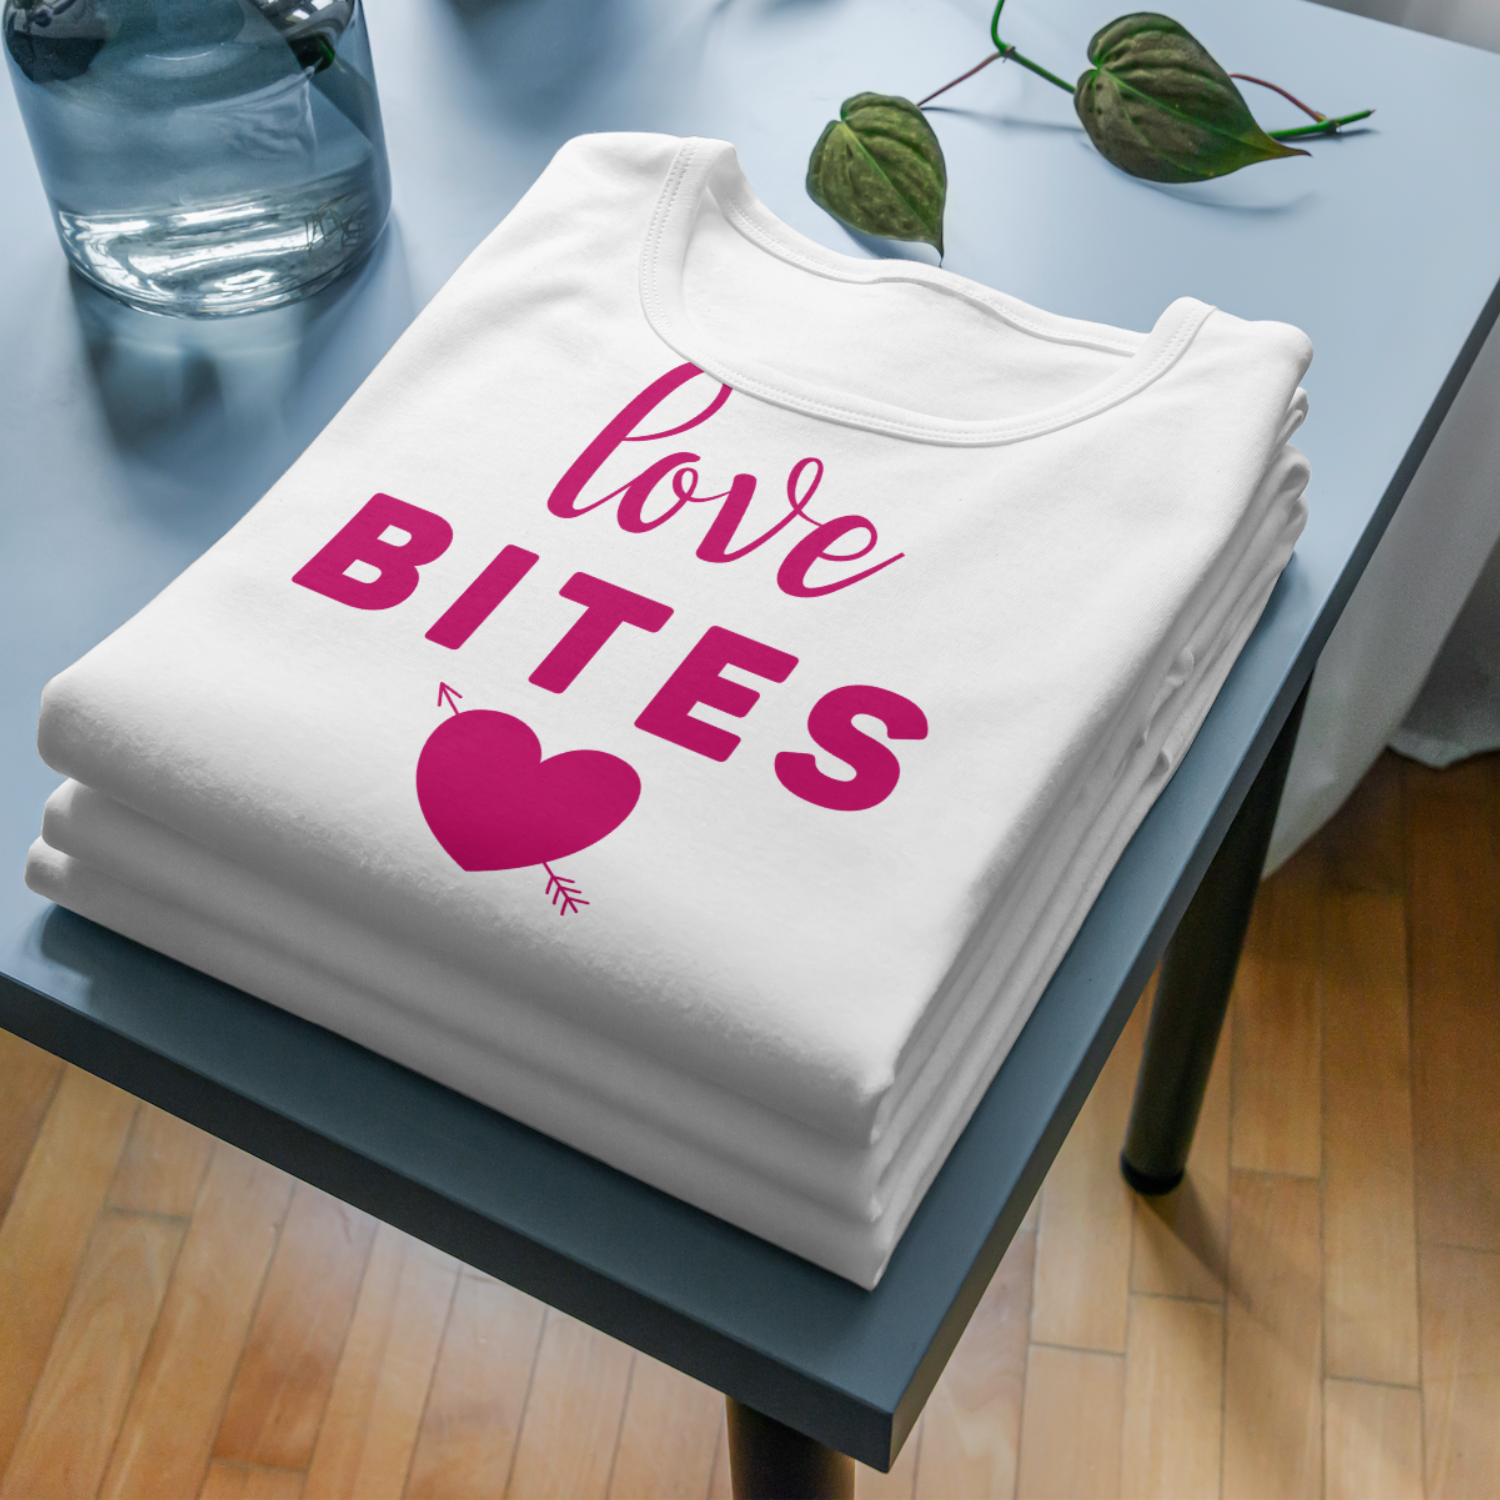 Love bites SVG | Digital Download | Cut File | SVG Only The Sweet Stuff